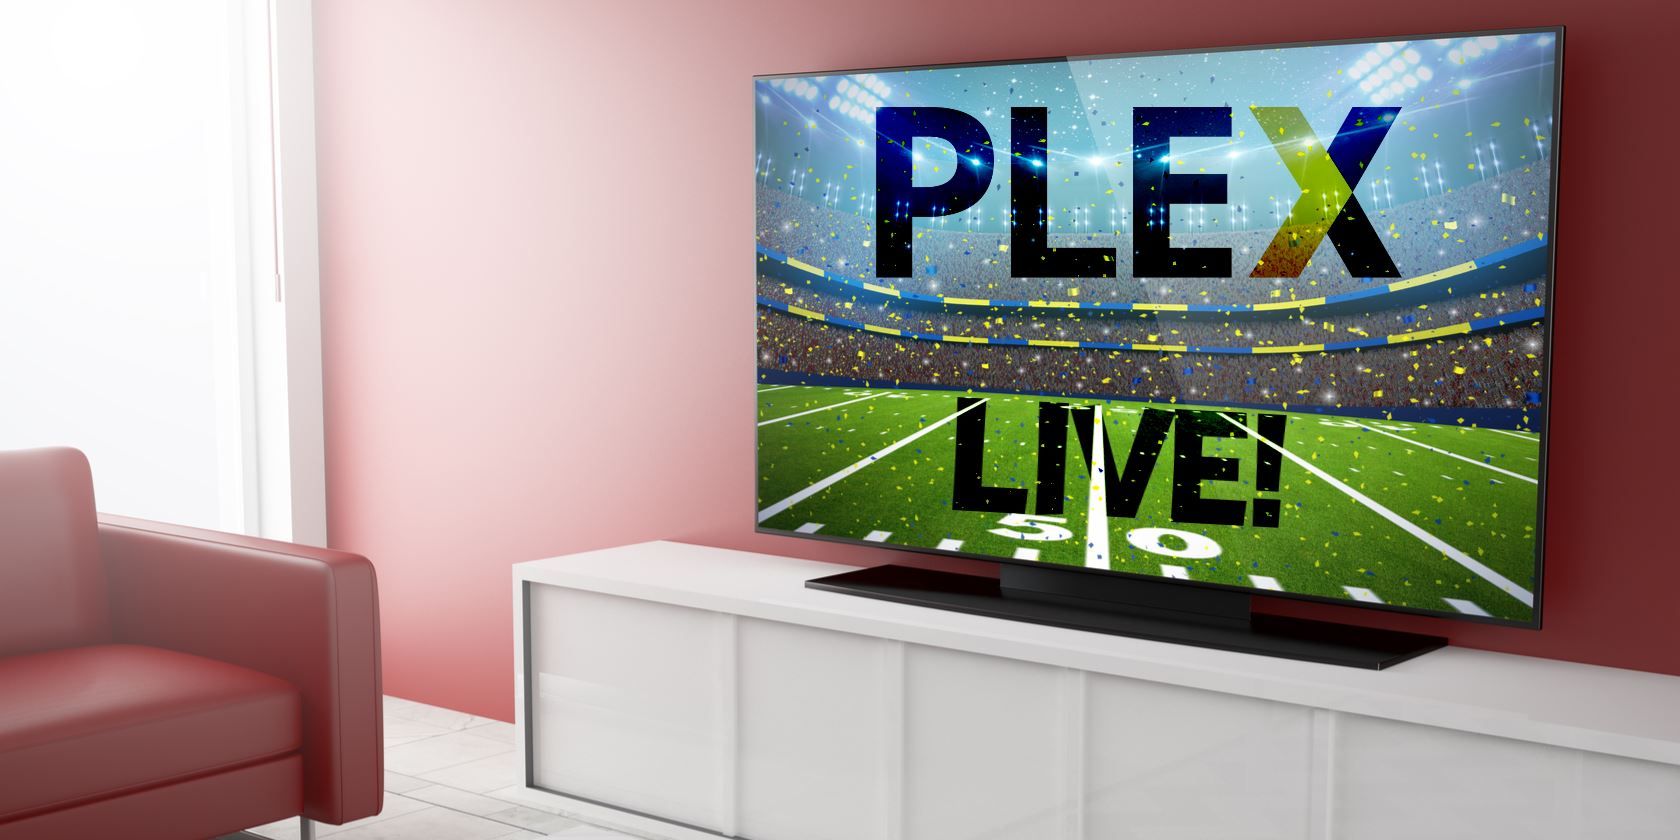 plex tv is it free